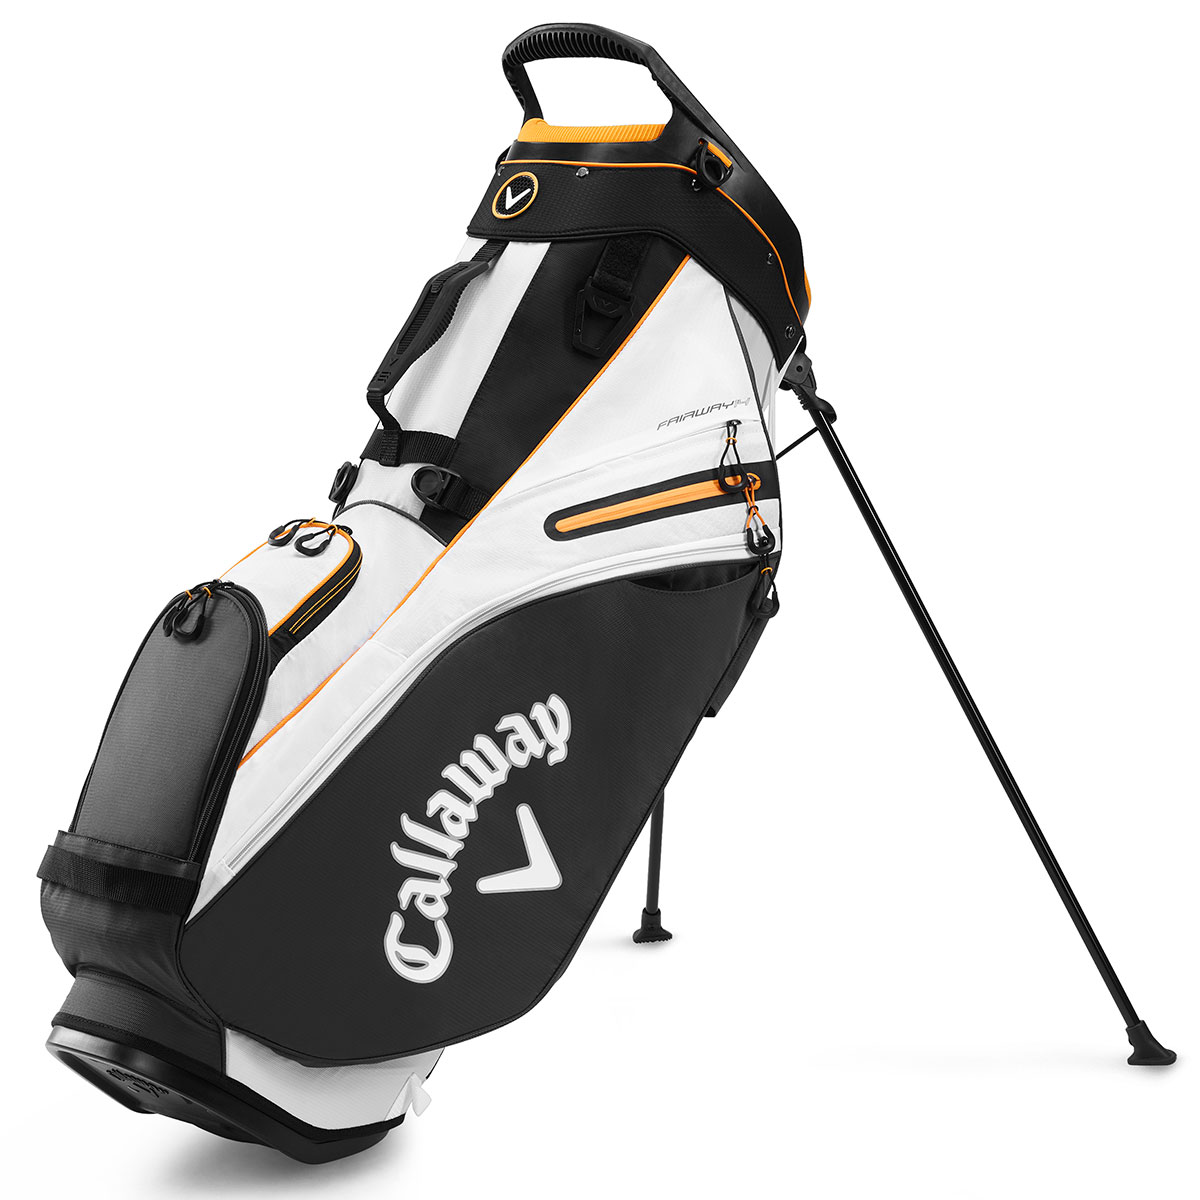 Askecho Organizer Golf Stand Bag 14 Way Divider Top BLAZER 2.0 / Black